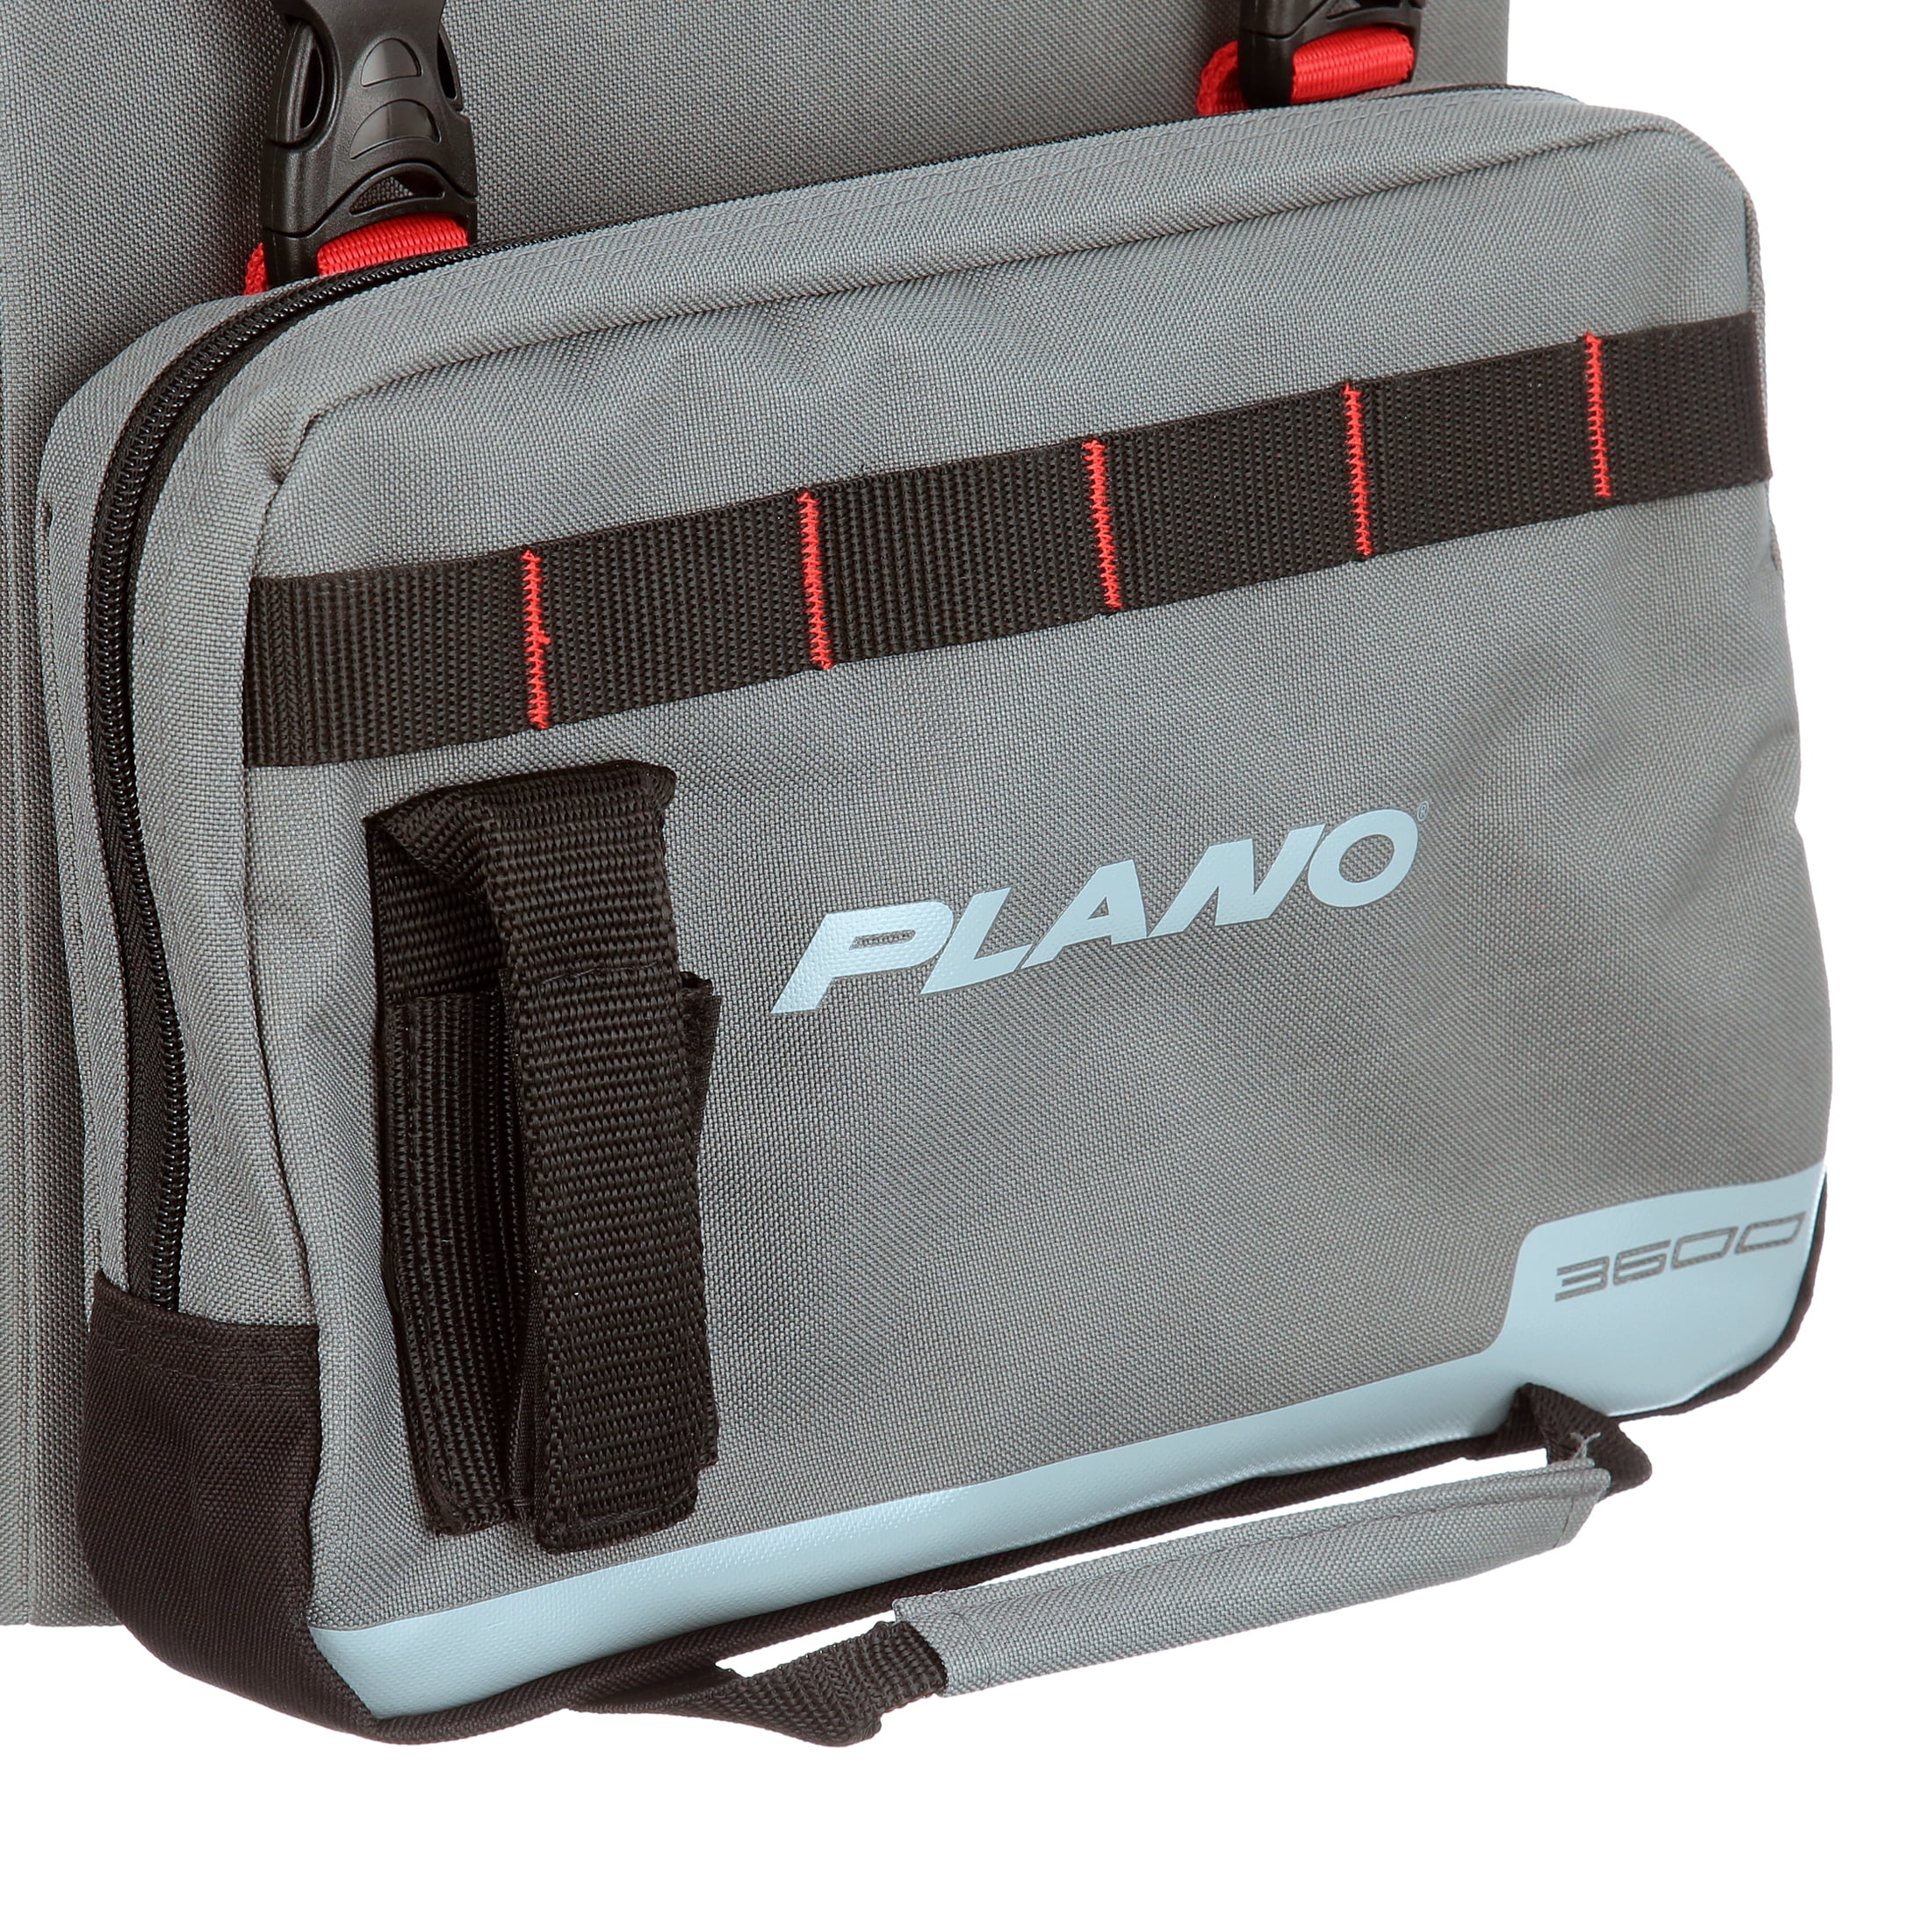 Plano Weekend Series Kayak Crate Soft Bag 